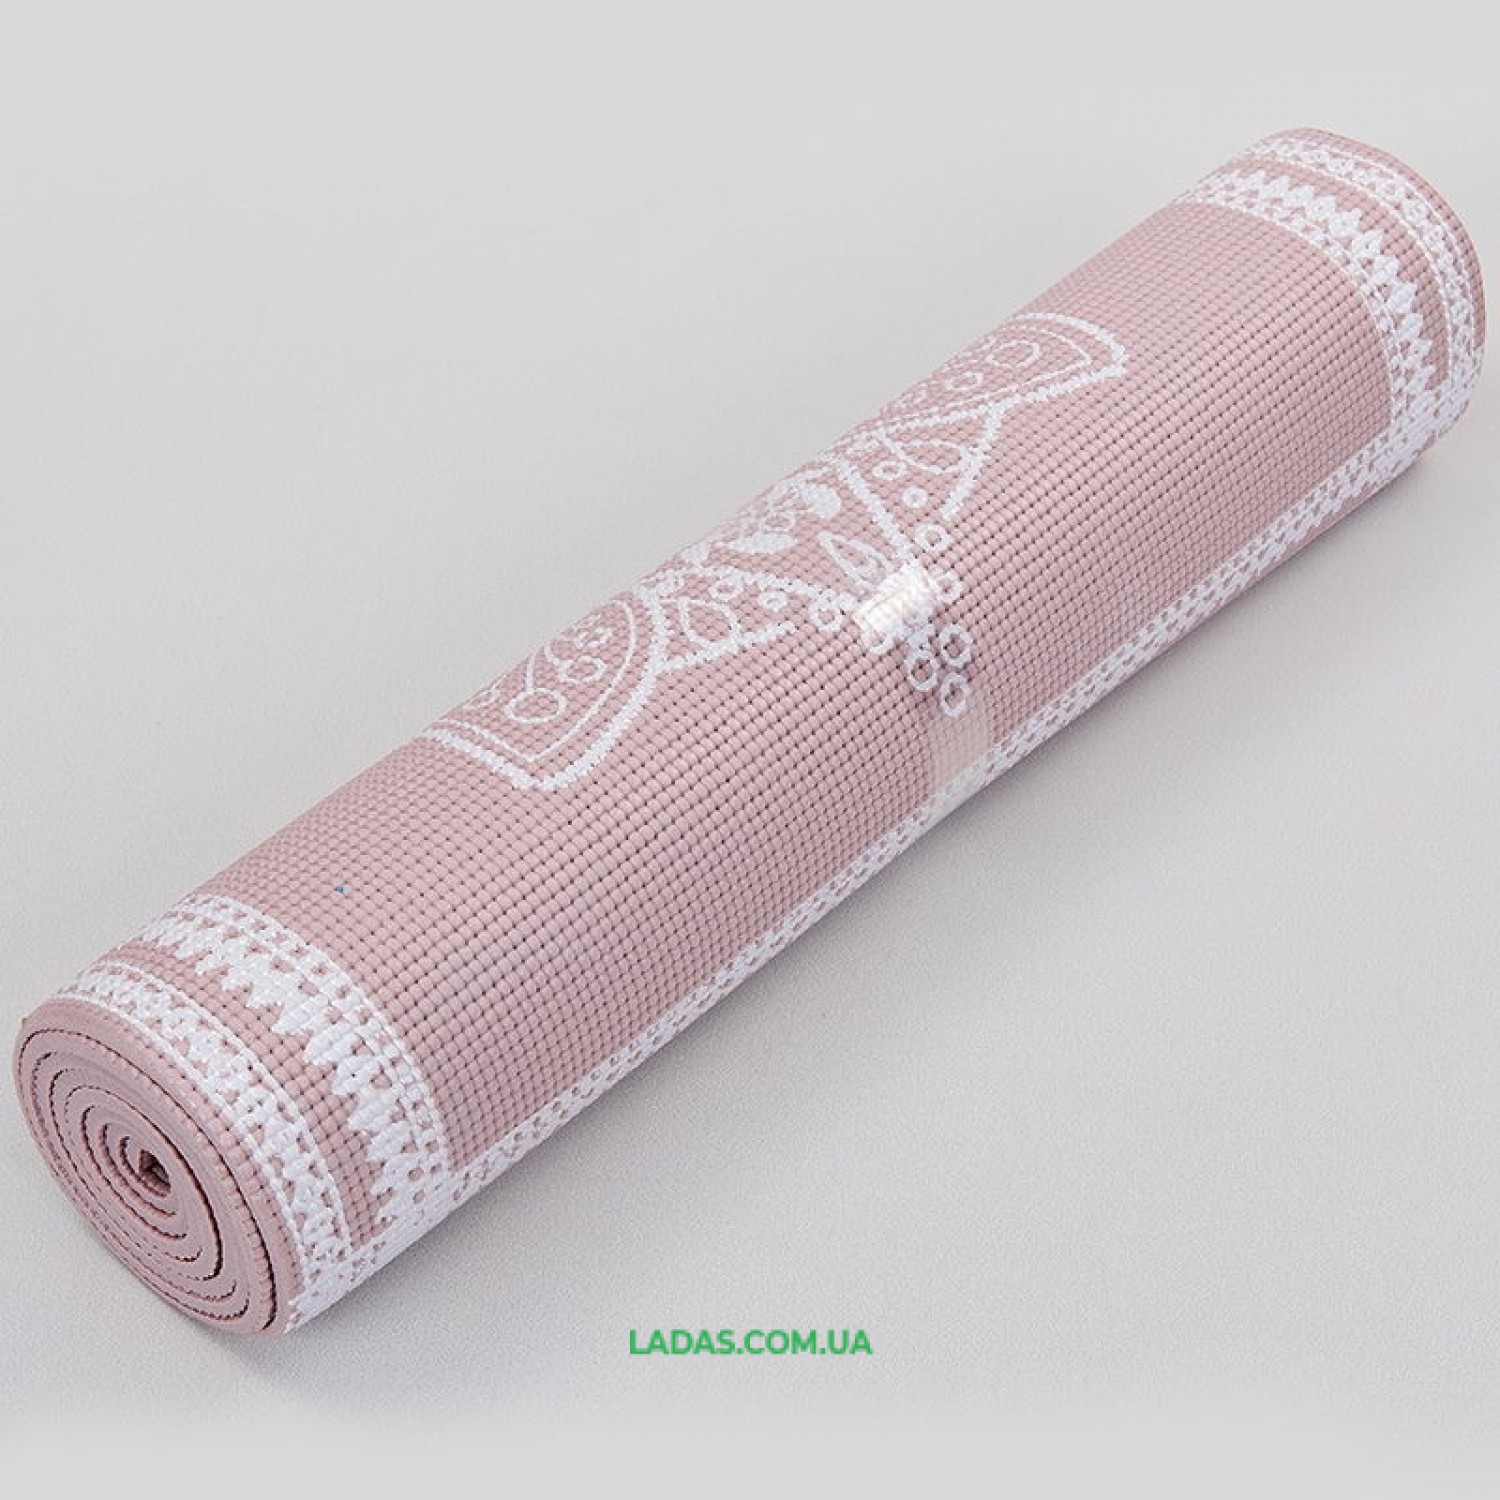 Коврик для йоги и фитнеса PVC двухслойный 6мм (размер 173смx61смx6мм)